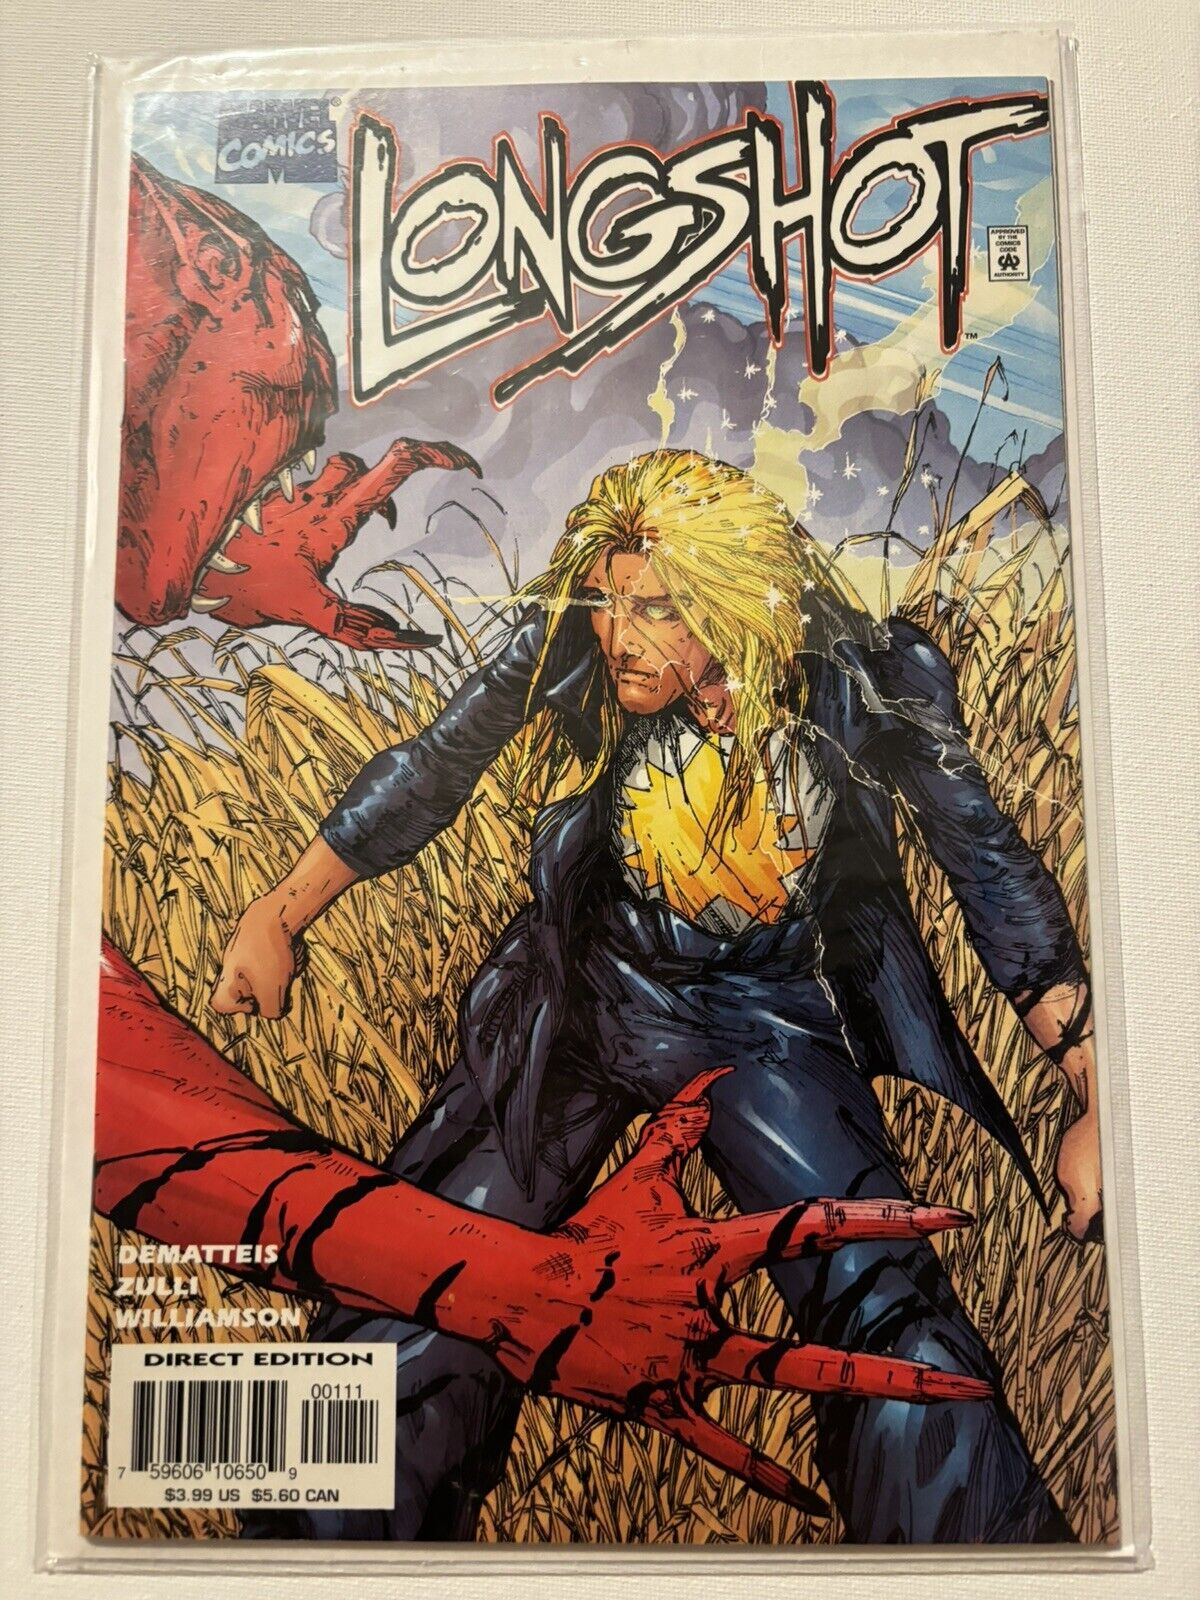 Longshot #1 (Marvel, February 1998)